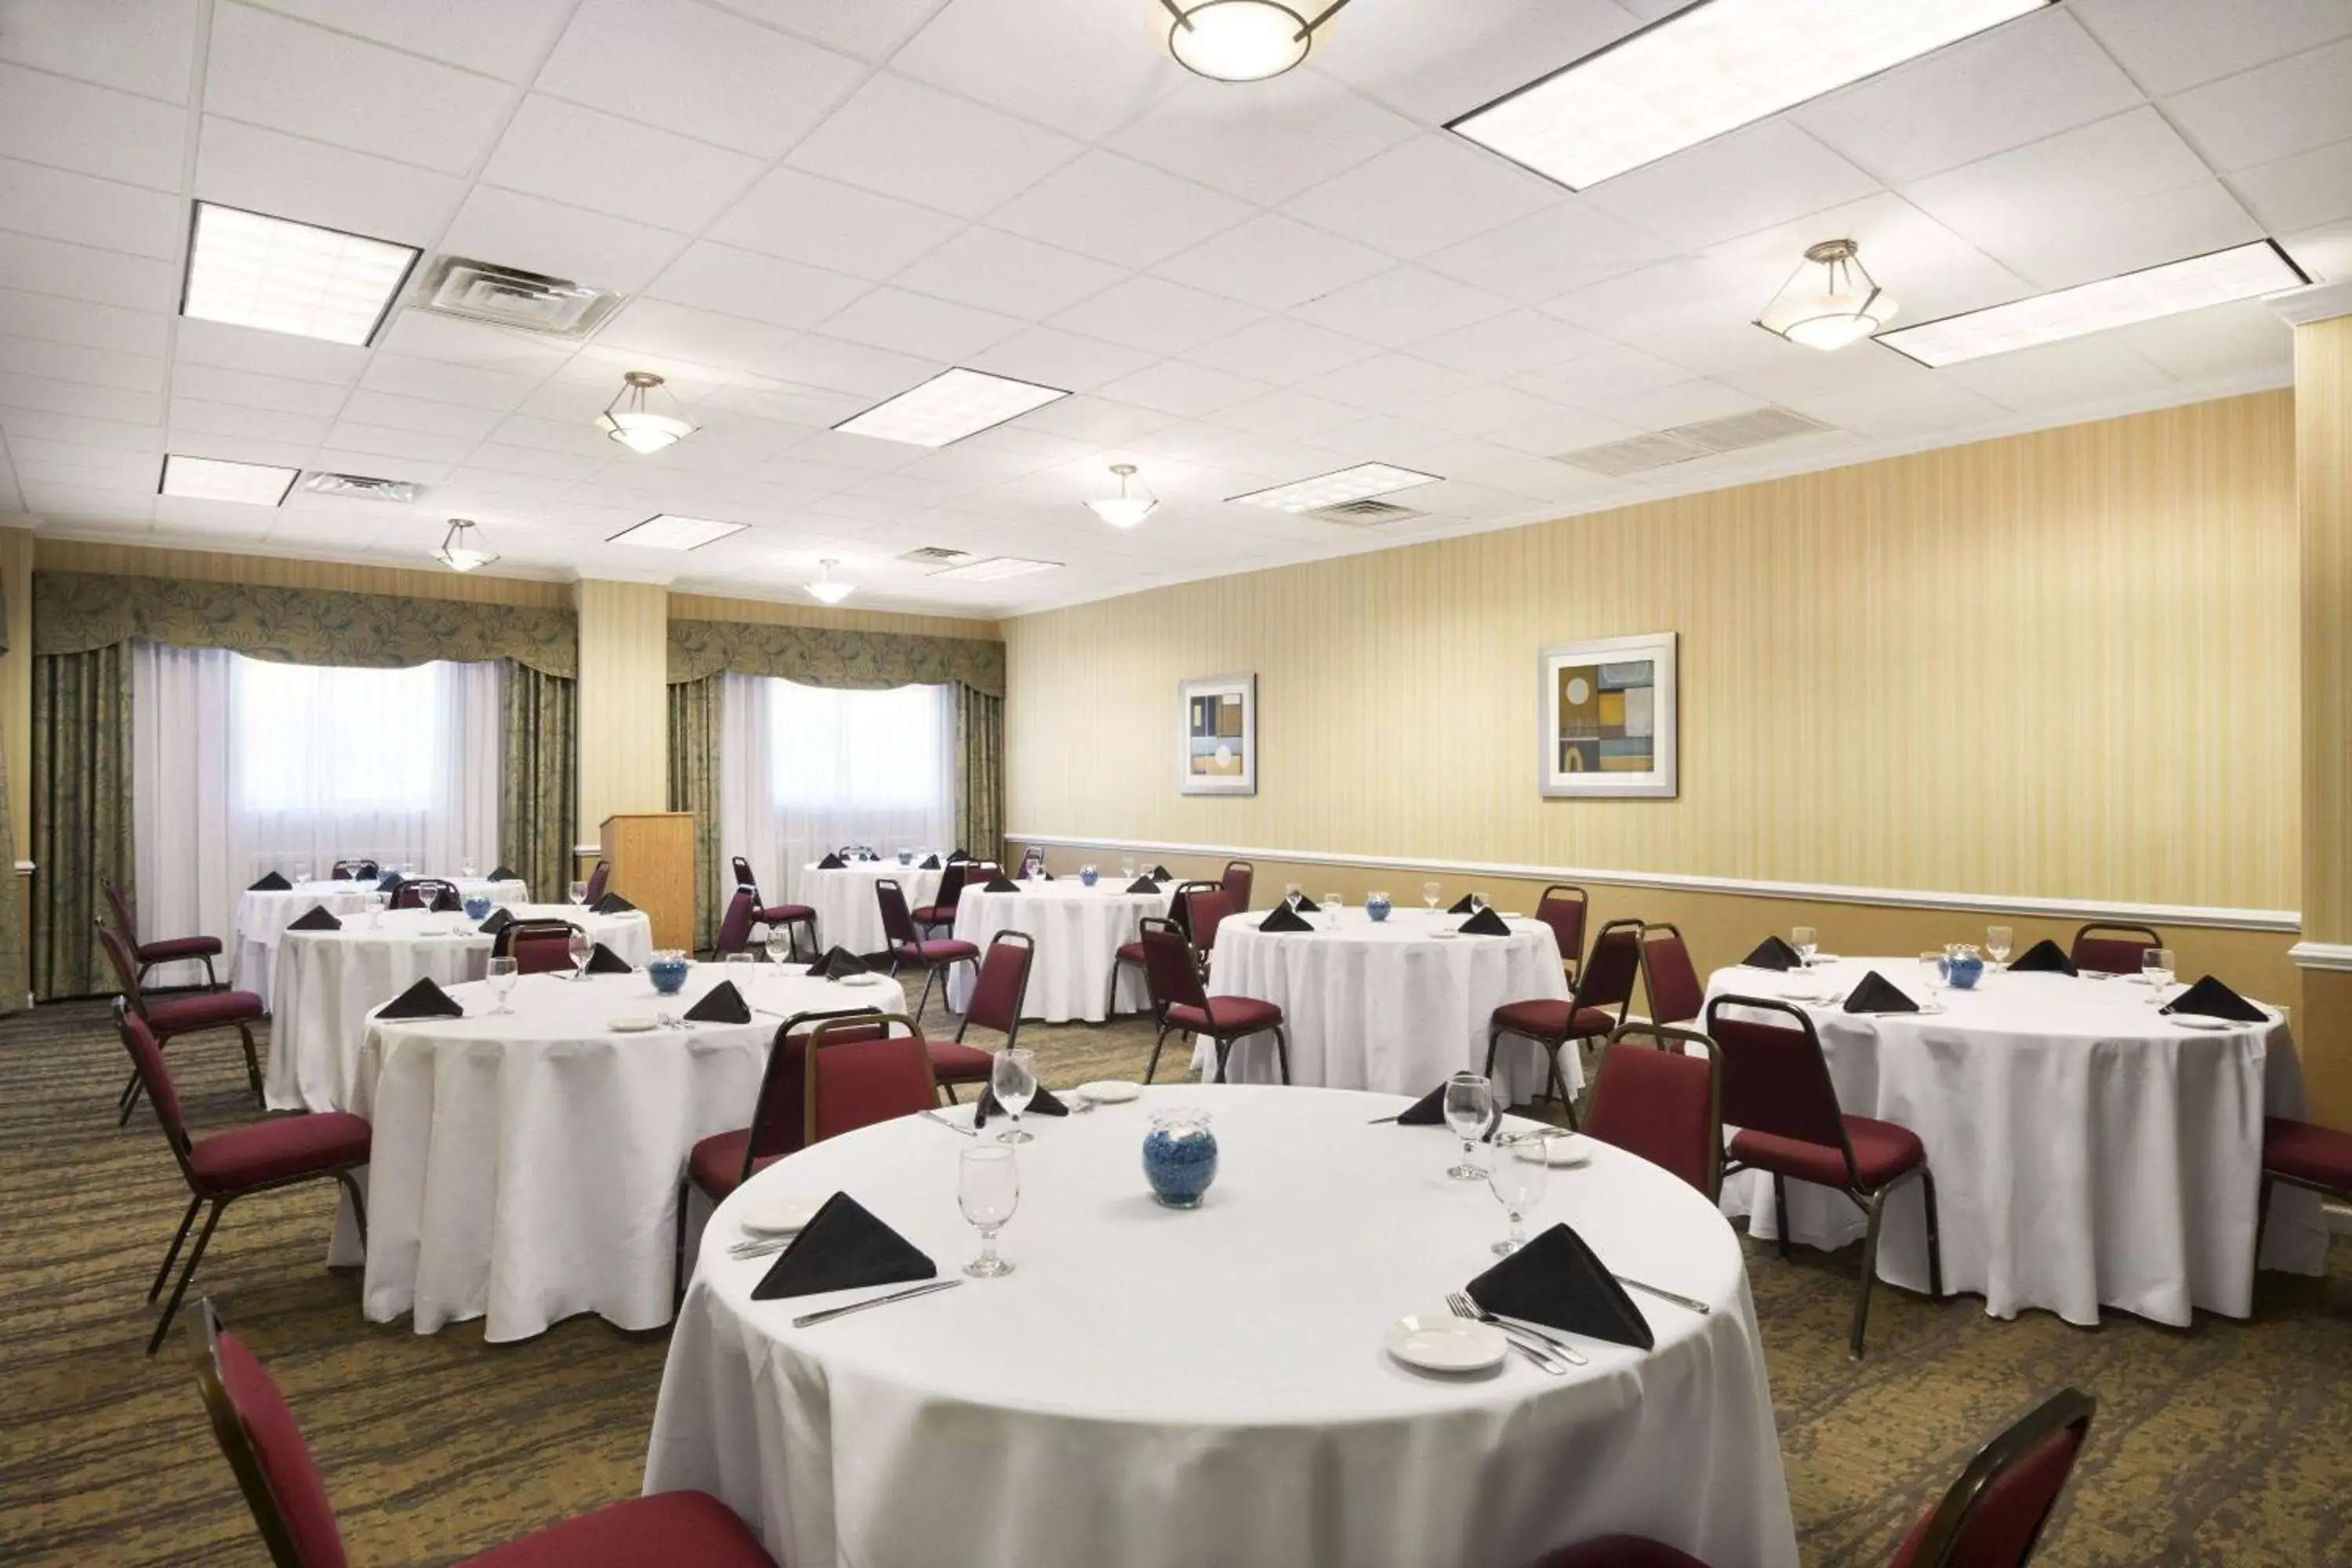 Banquet/Function facilities, Restaurant/Places to Eat in Wyndham Garden Lake Guntersville